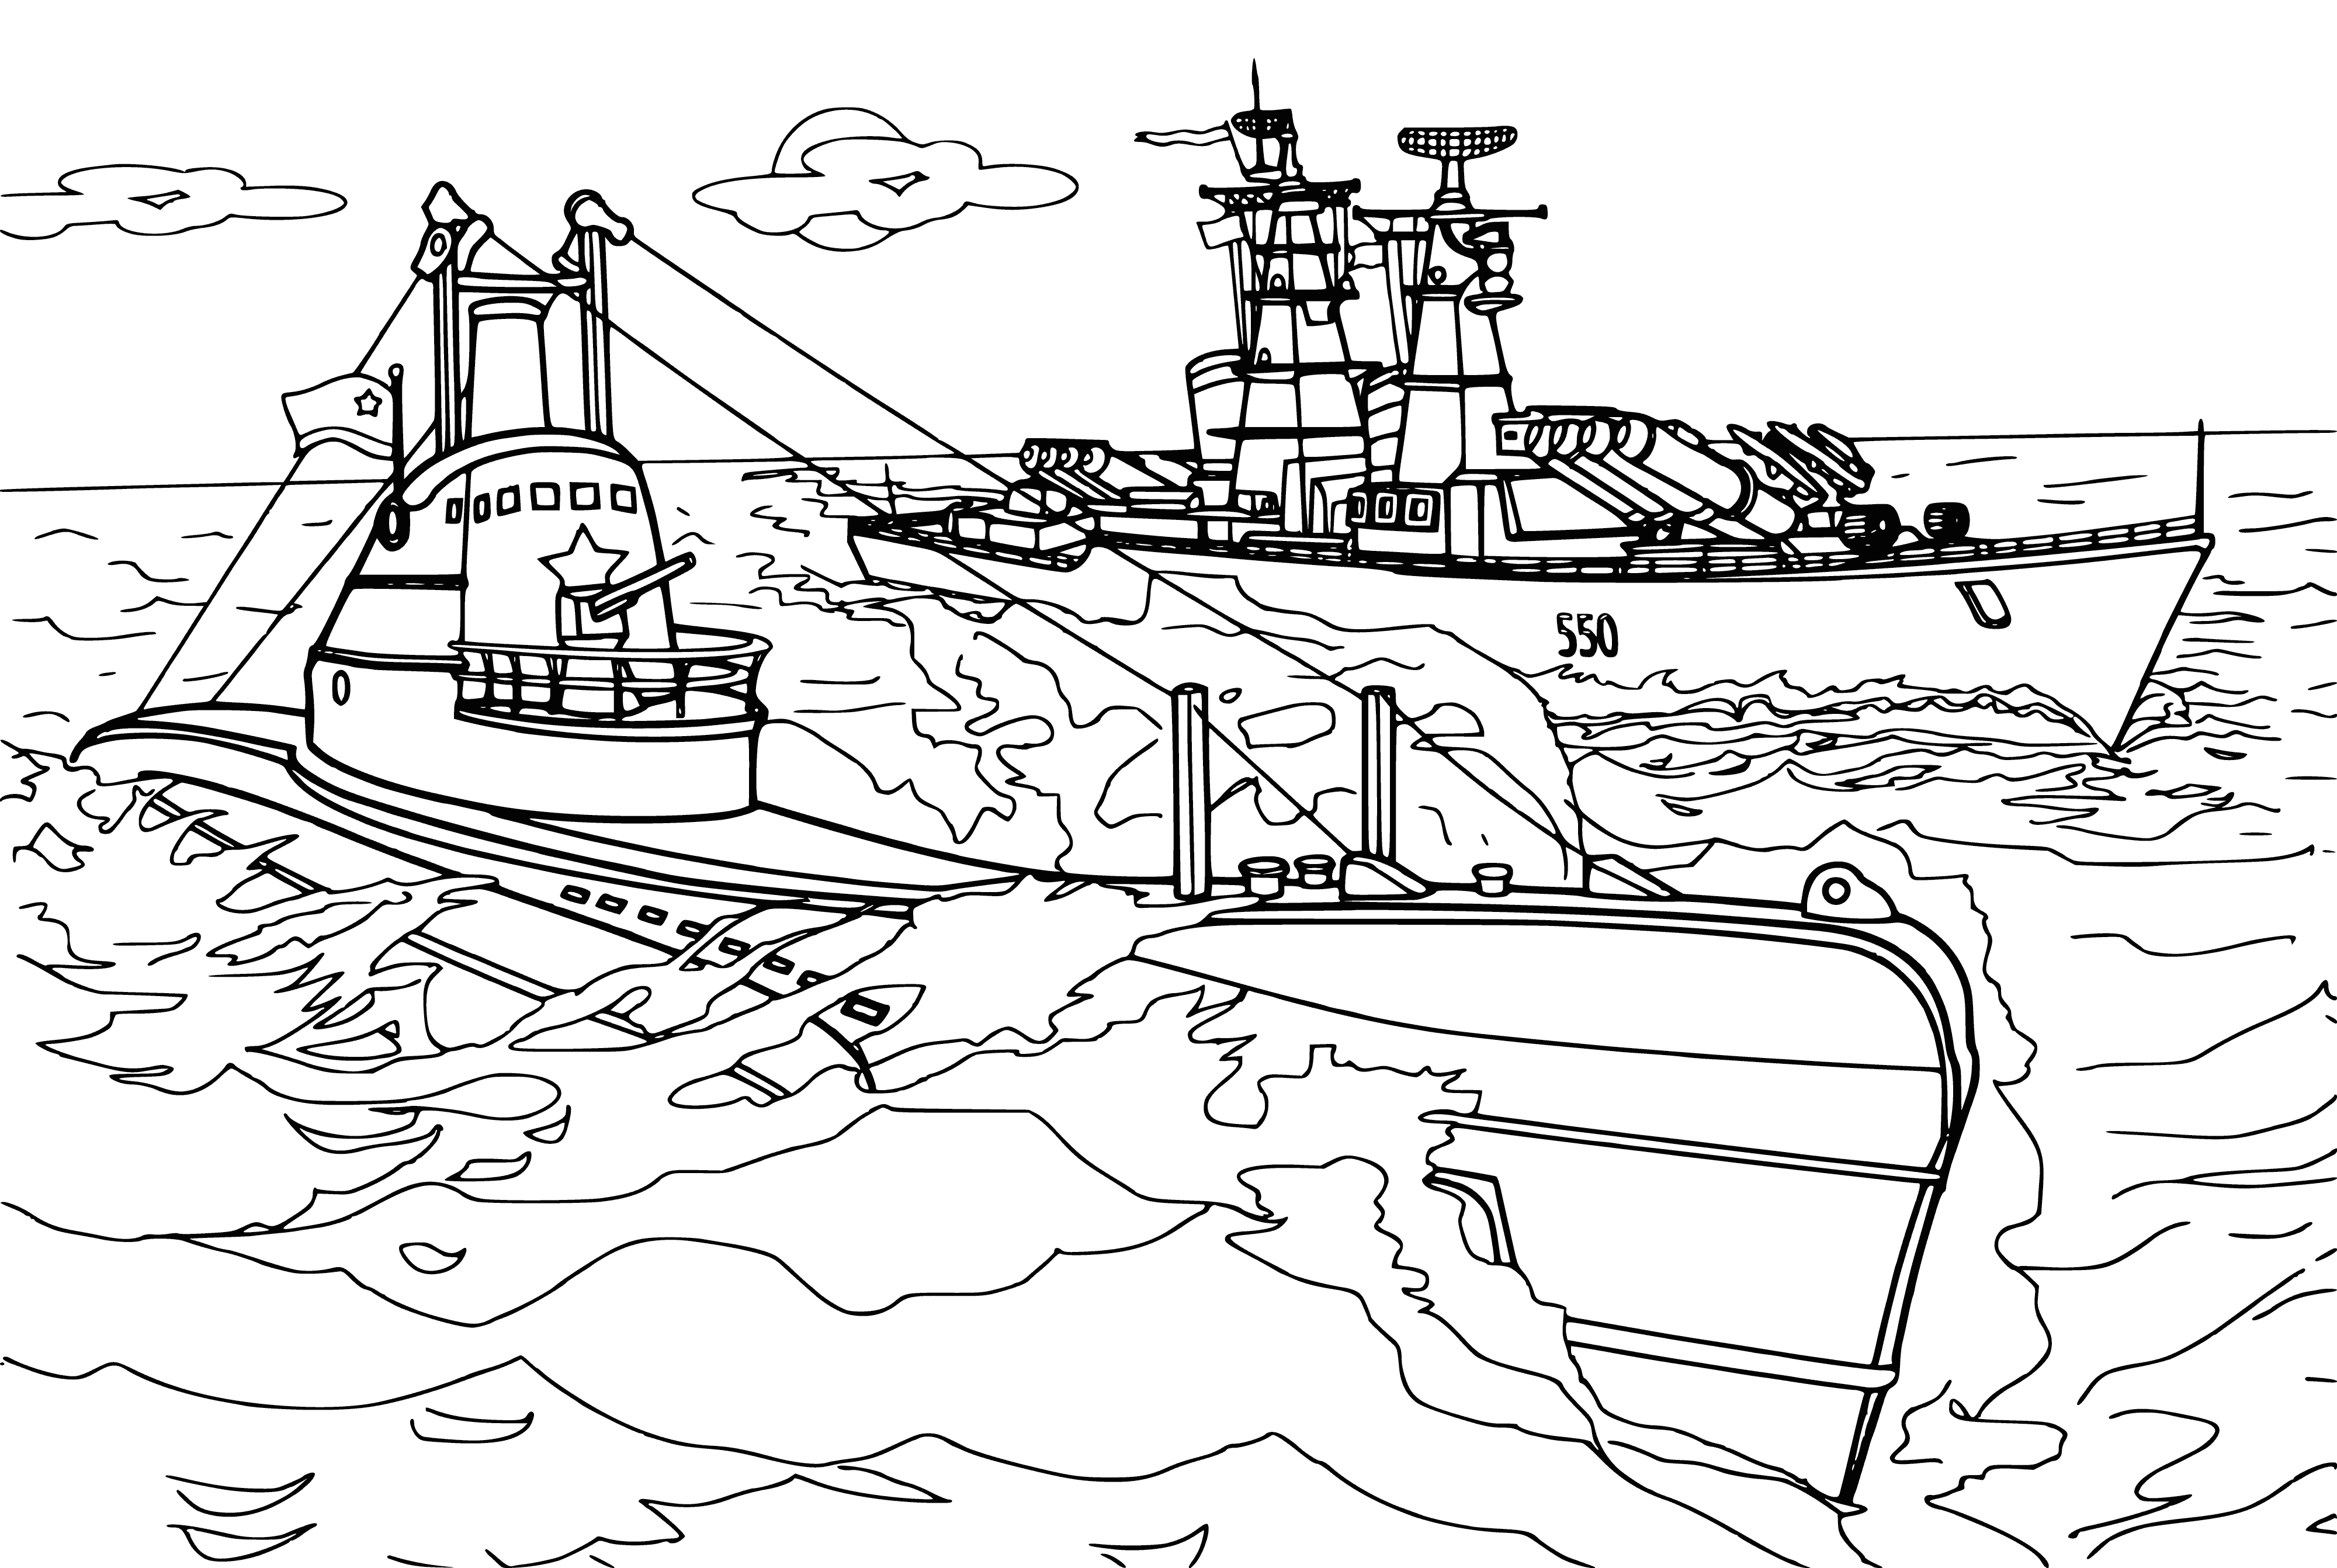 Denizaltı Sch-402 boyama sayfası